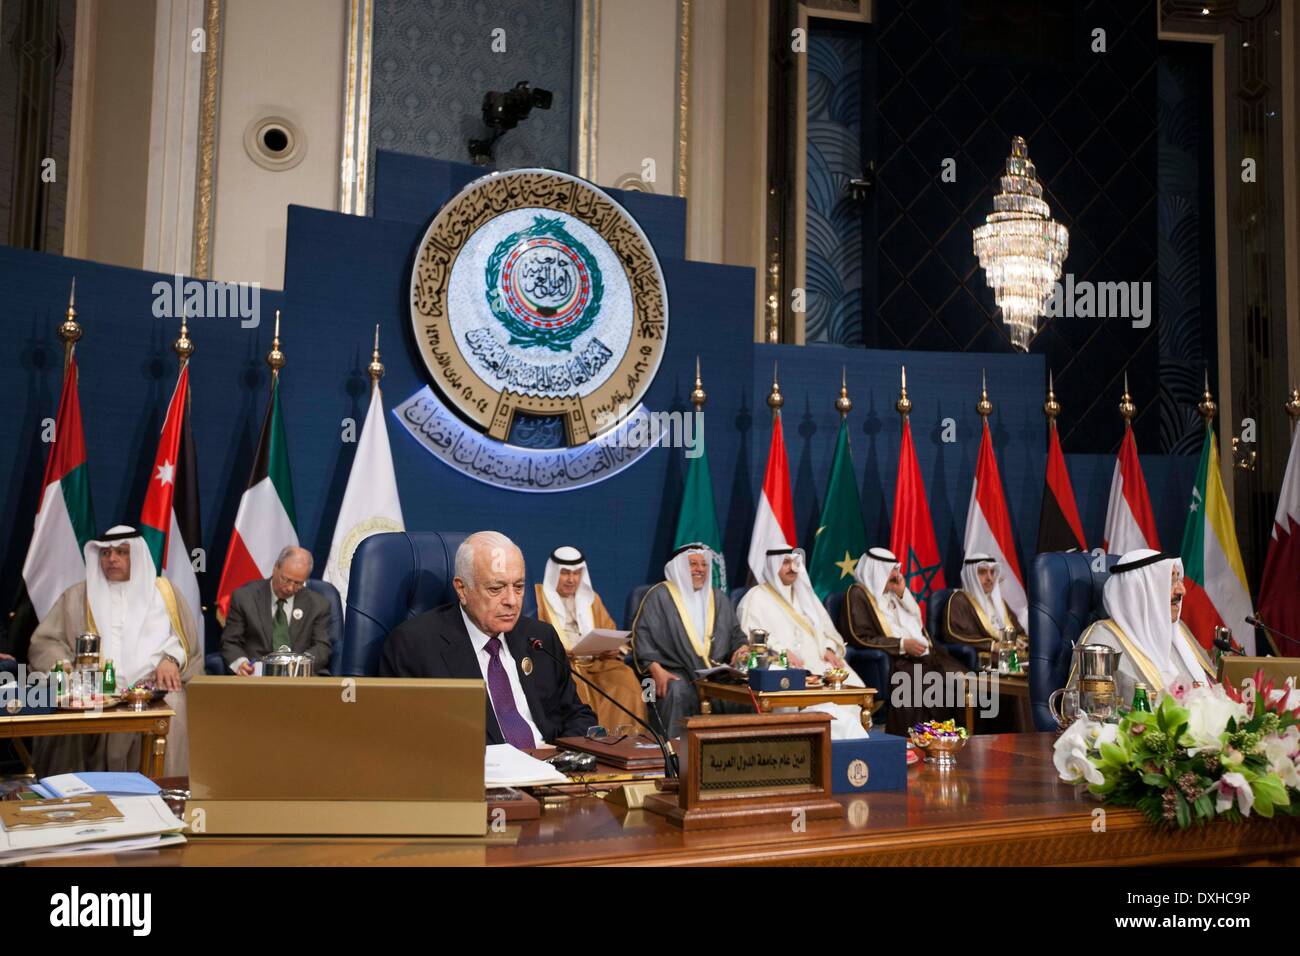 La ville de Koweït, Koweït. Mar 26, 2014. Le Secrétaire général de la Ligue arabe Nabil al-Arabi assiste à la cérémonie de clôture du 25e Sommet de la Ligue arabe dans la ville de Koweït, Koweït, le 26 mars 2014. Les dirigeants des États arabes a conclu les deux jours du sommet de la Ligue arabe avec l'annonce de Déclaration de Koweït le mercredi à Bayan Palace au Koweït. Credit : Cui Xinyu/Xinhua/Alamy Live News Banque D'Images